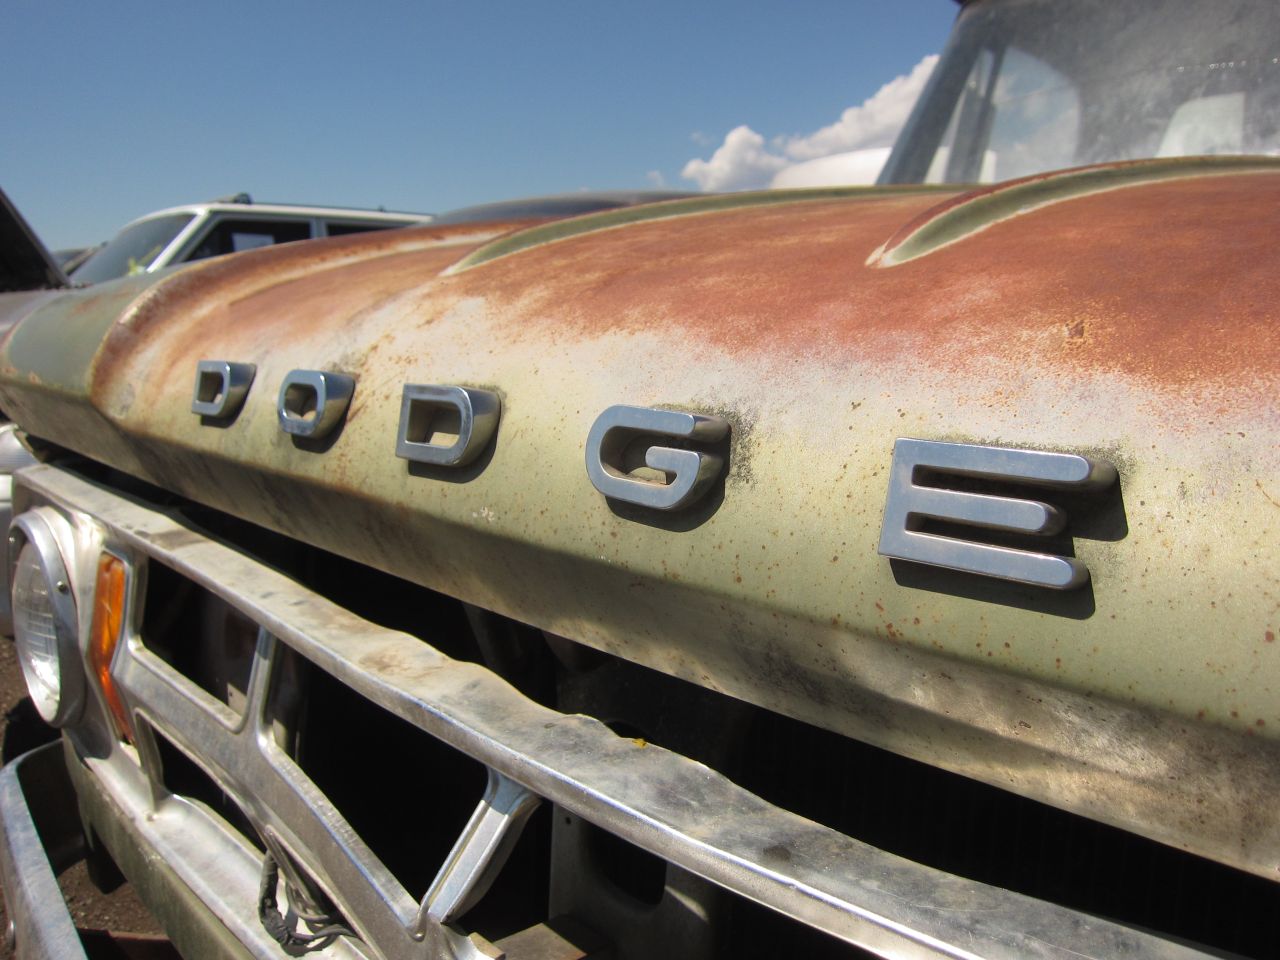 Junkyard Find: 1968 Dodge D-100 Adventurer Pickup